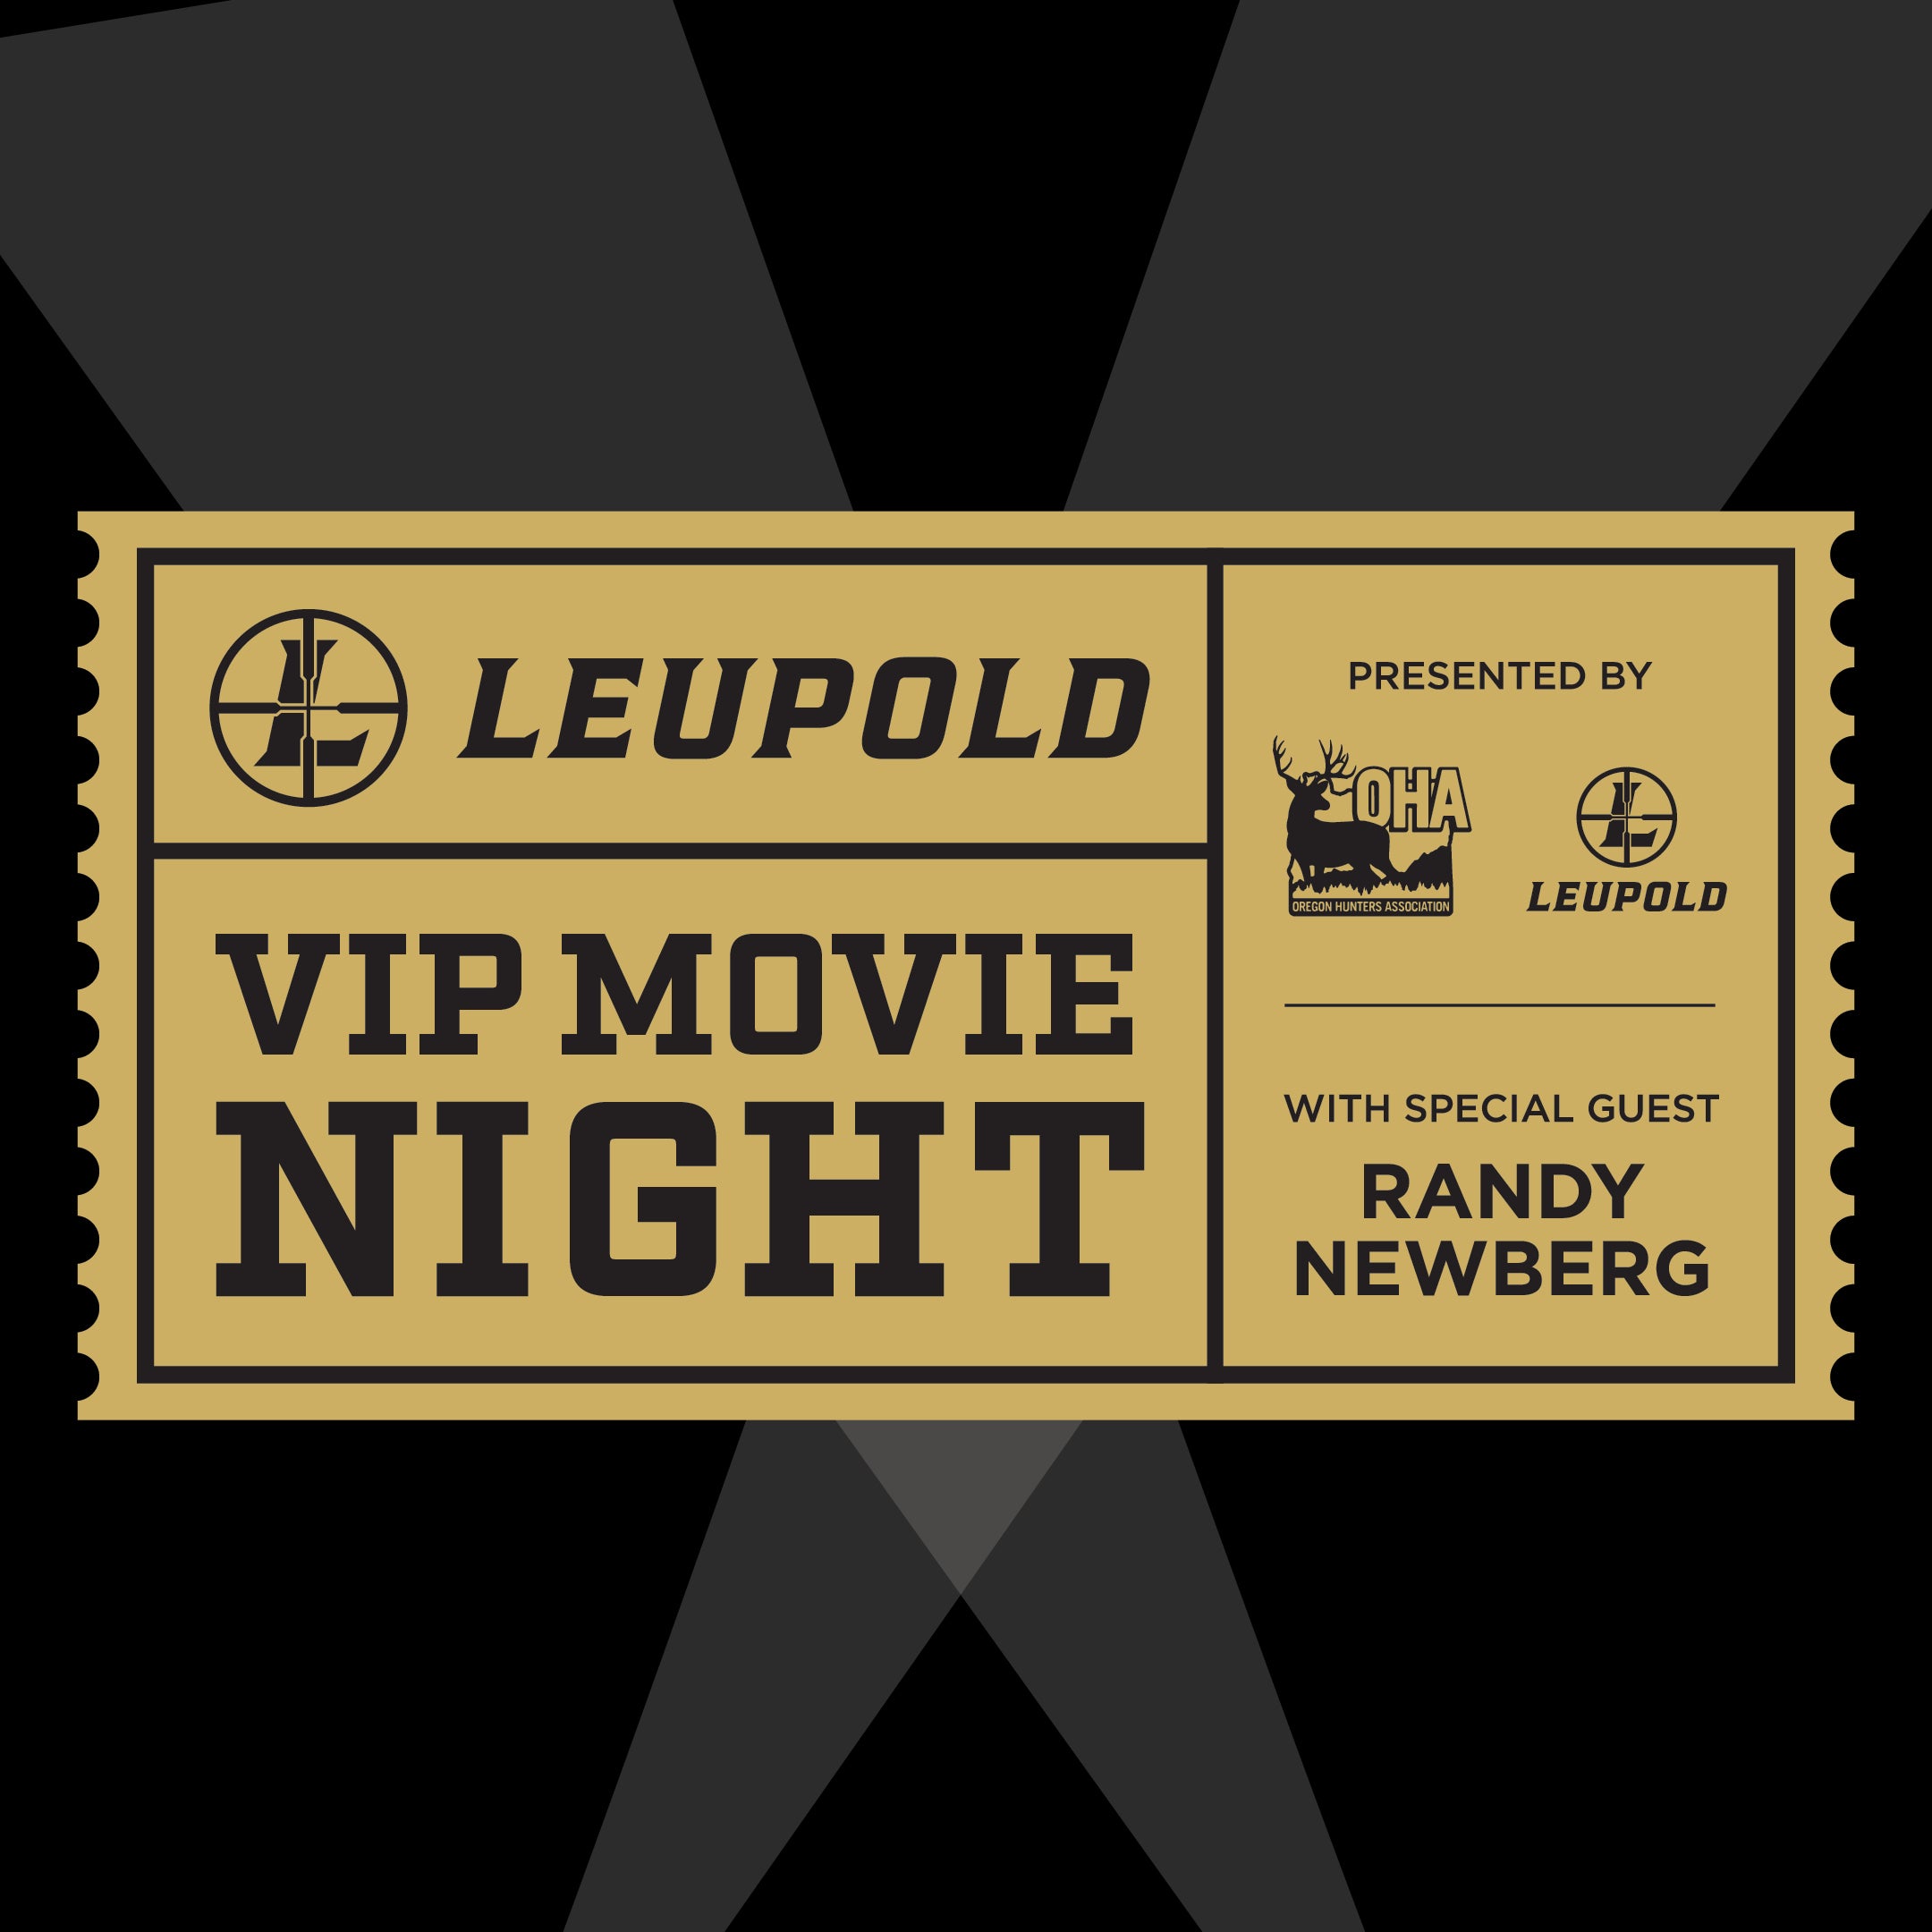 Pacific Northwest Sportsmen's Show® presented by Leupold - VIP Movie Ticket